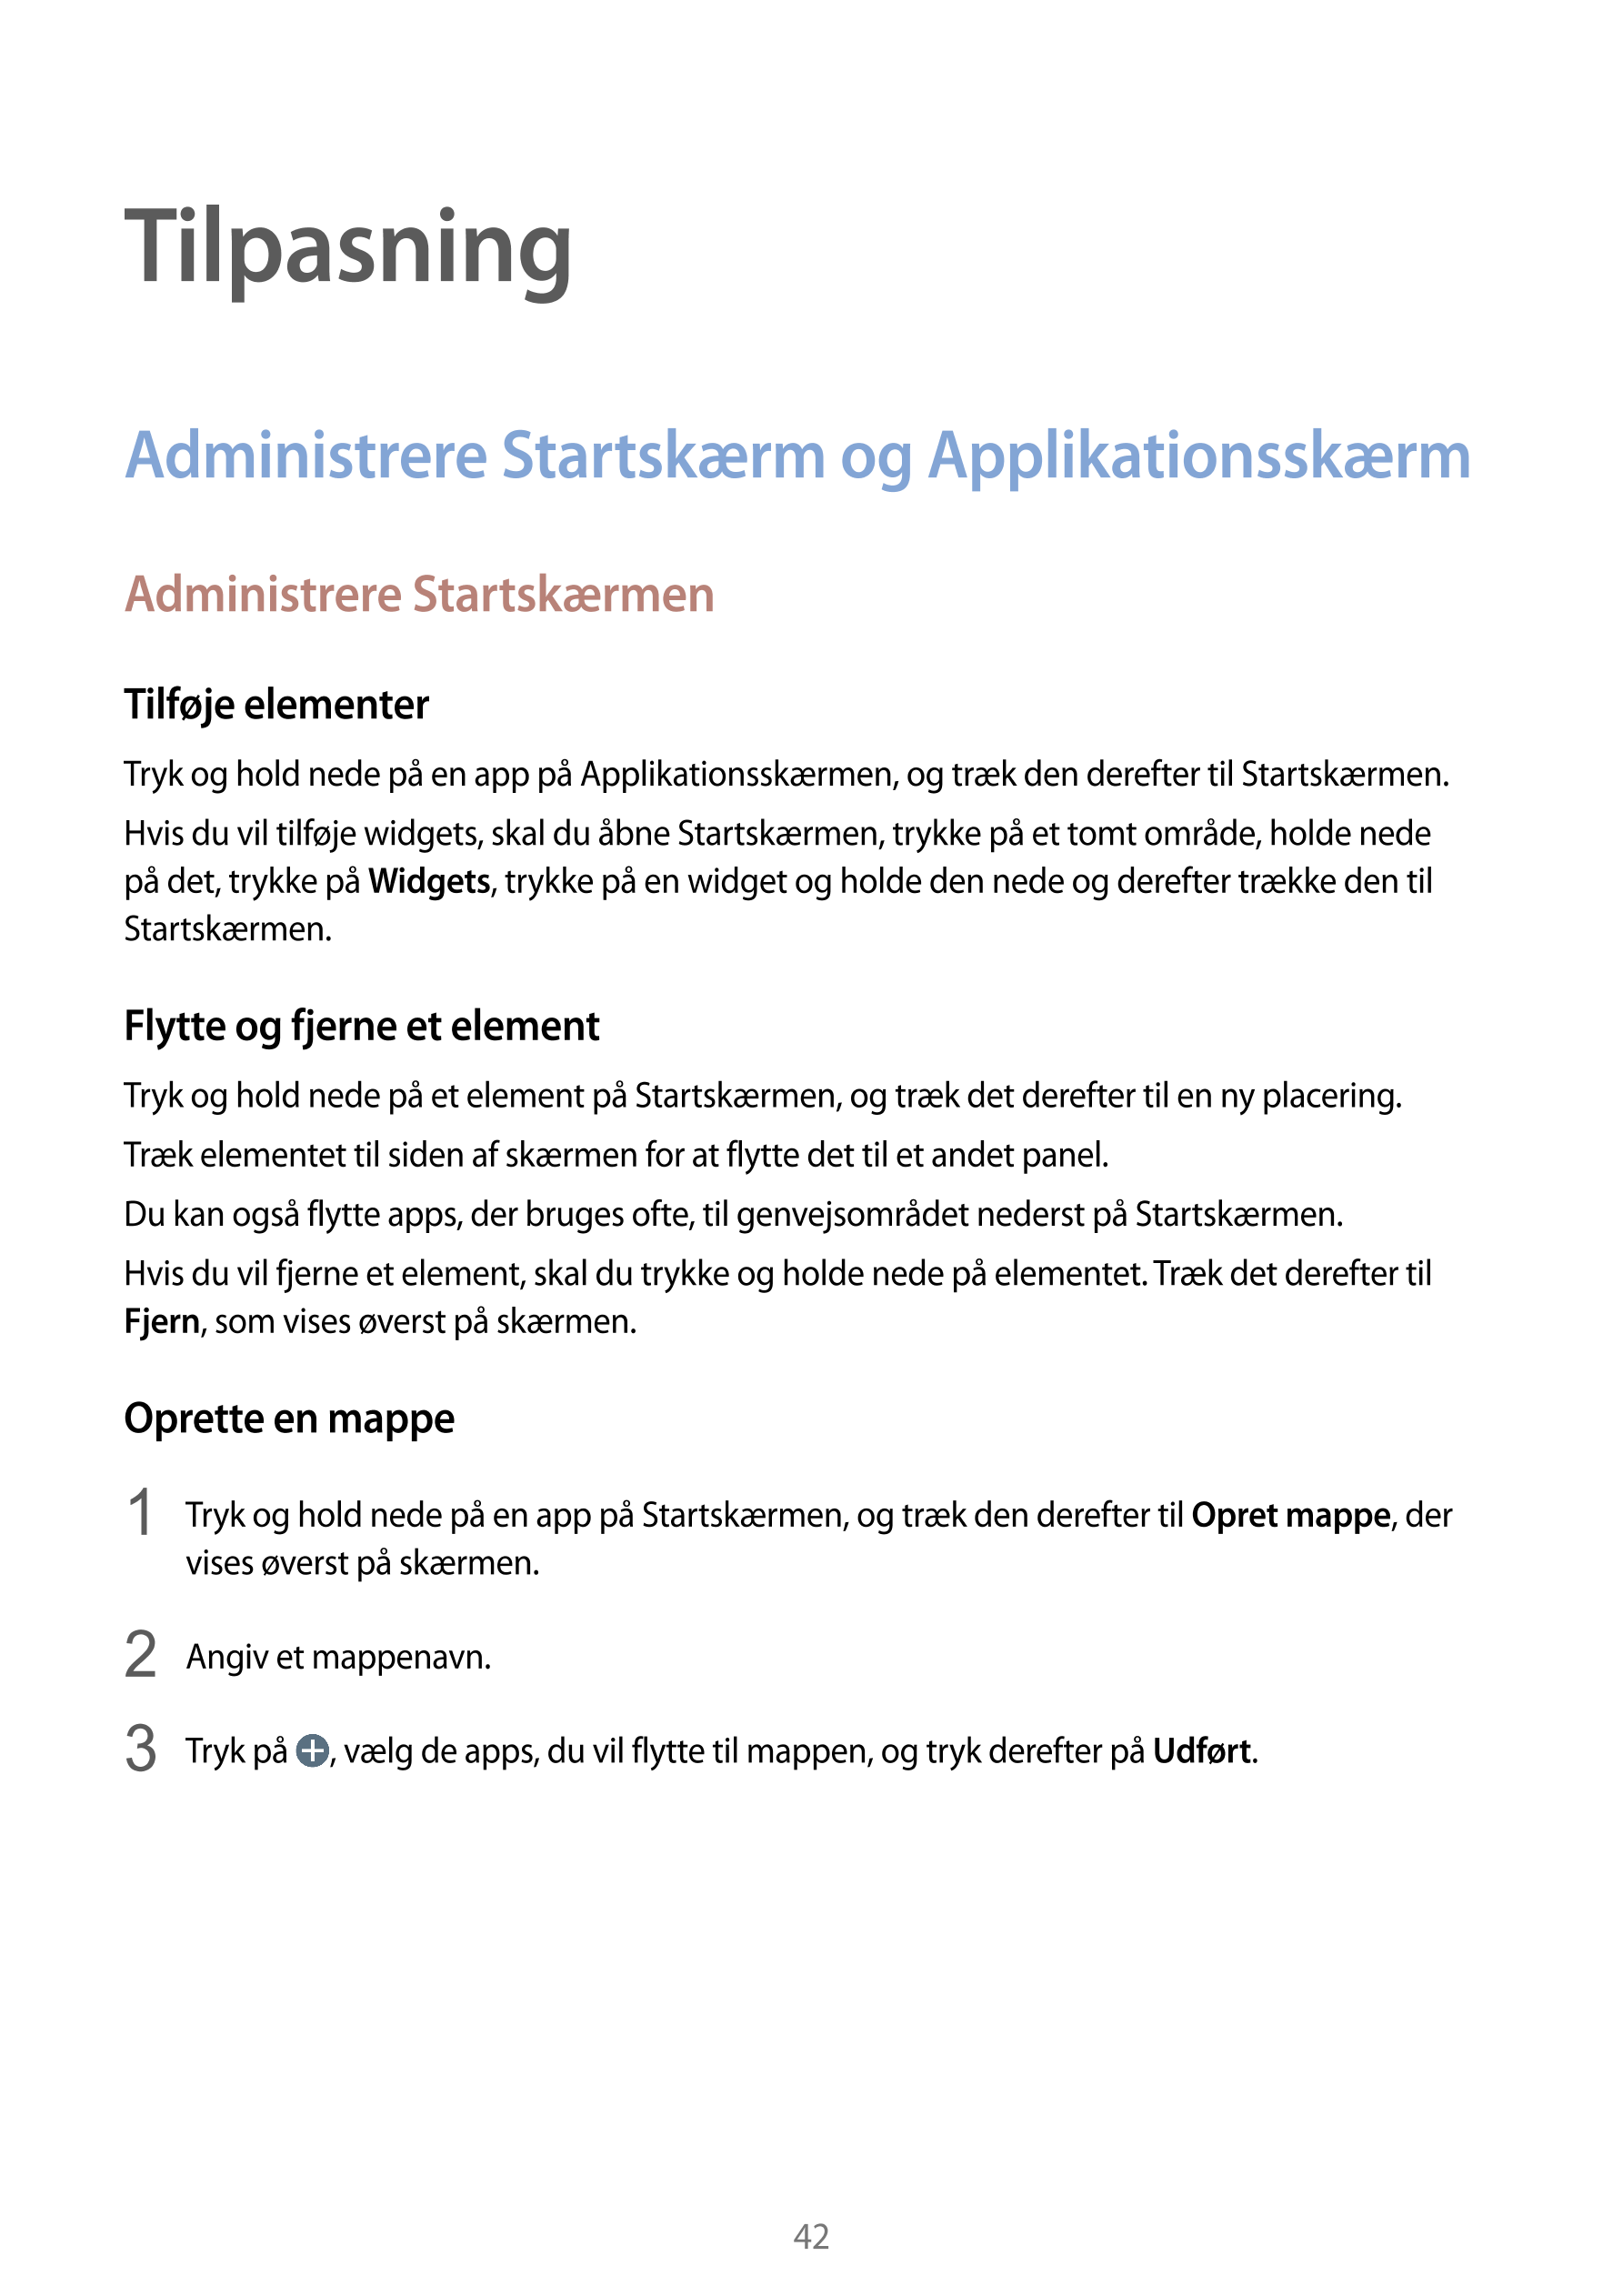 Tilpasning
Administrere Startskærm og Applikationsskærm
Administrere Startskærmen
Tilføje elementer
Tryk og hold nede på en app 